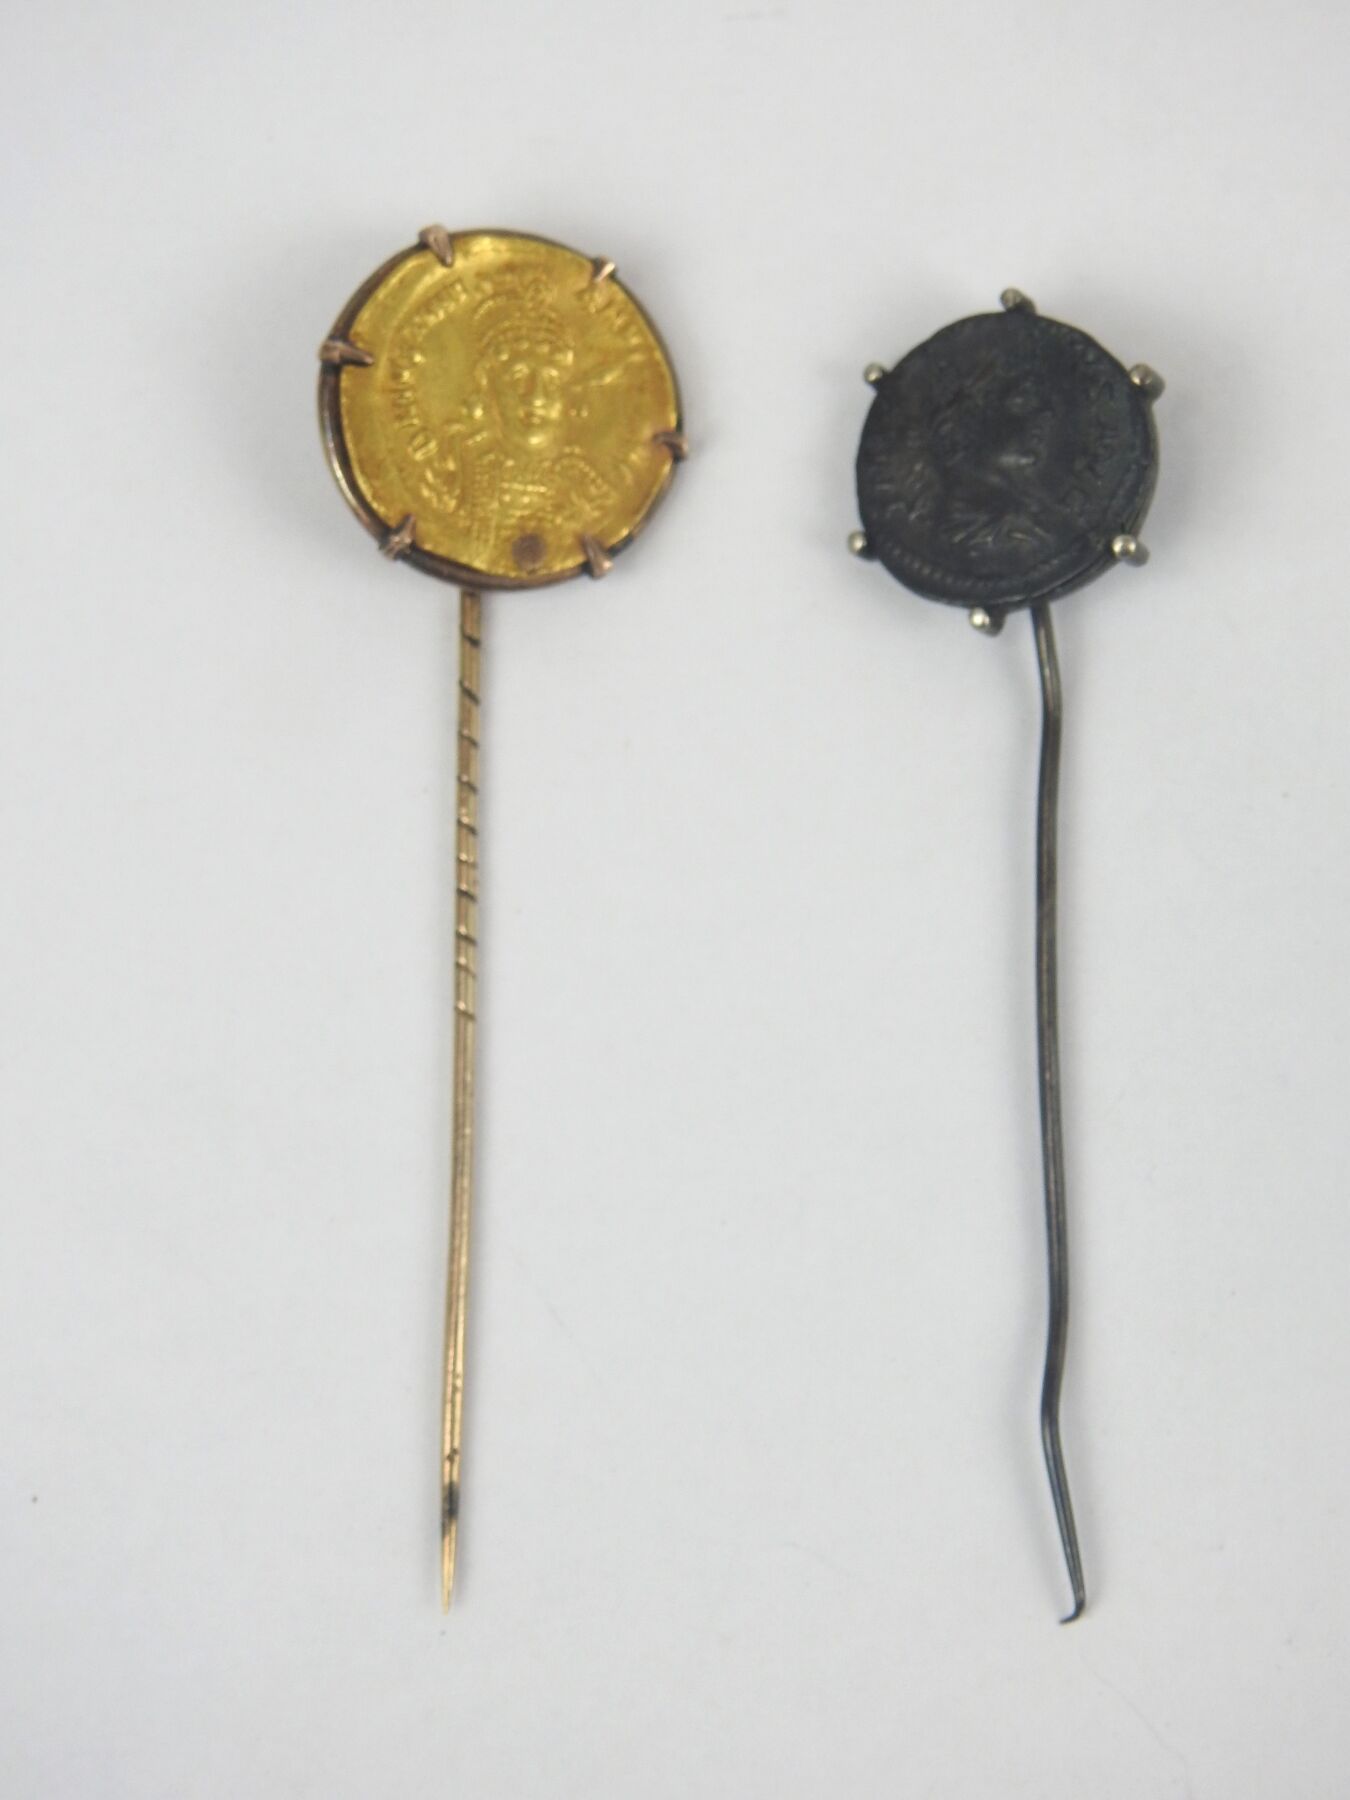 Null Alfiler decorado con una moneda bizantina de oro:
Sólido de Justiniano II (&hellip;